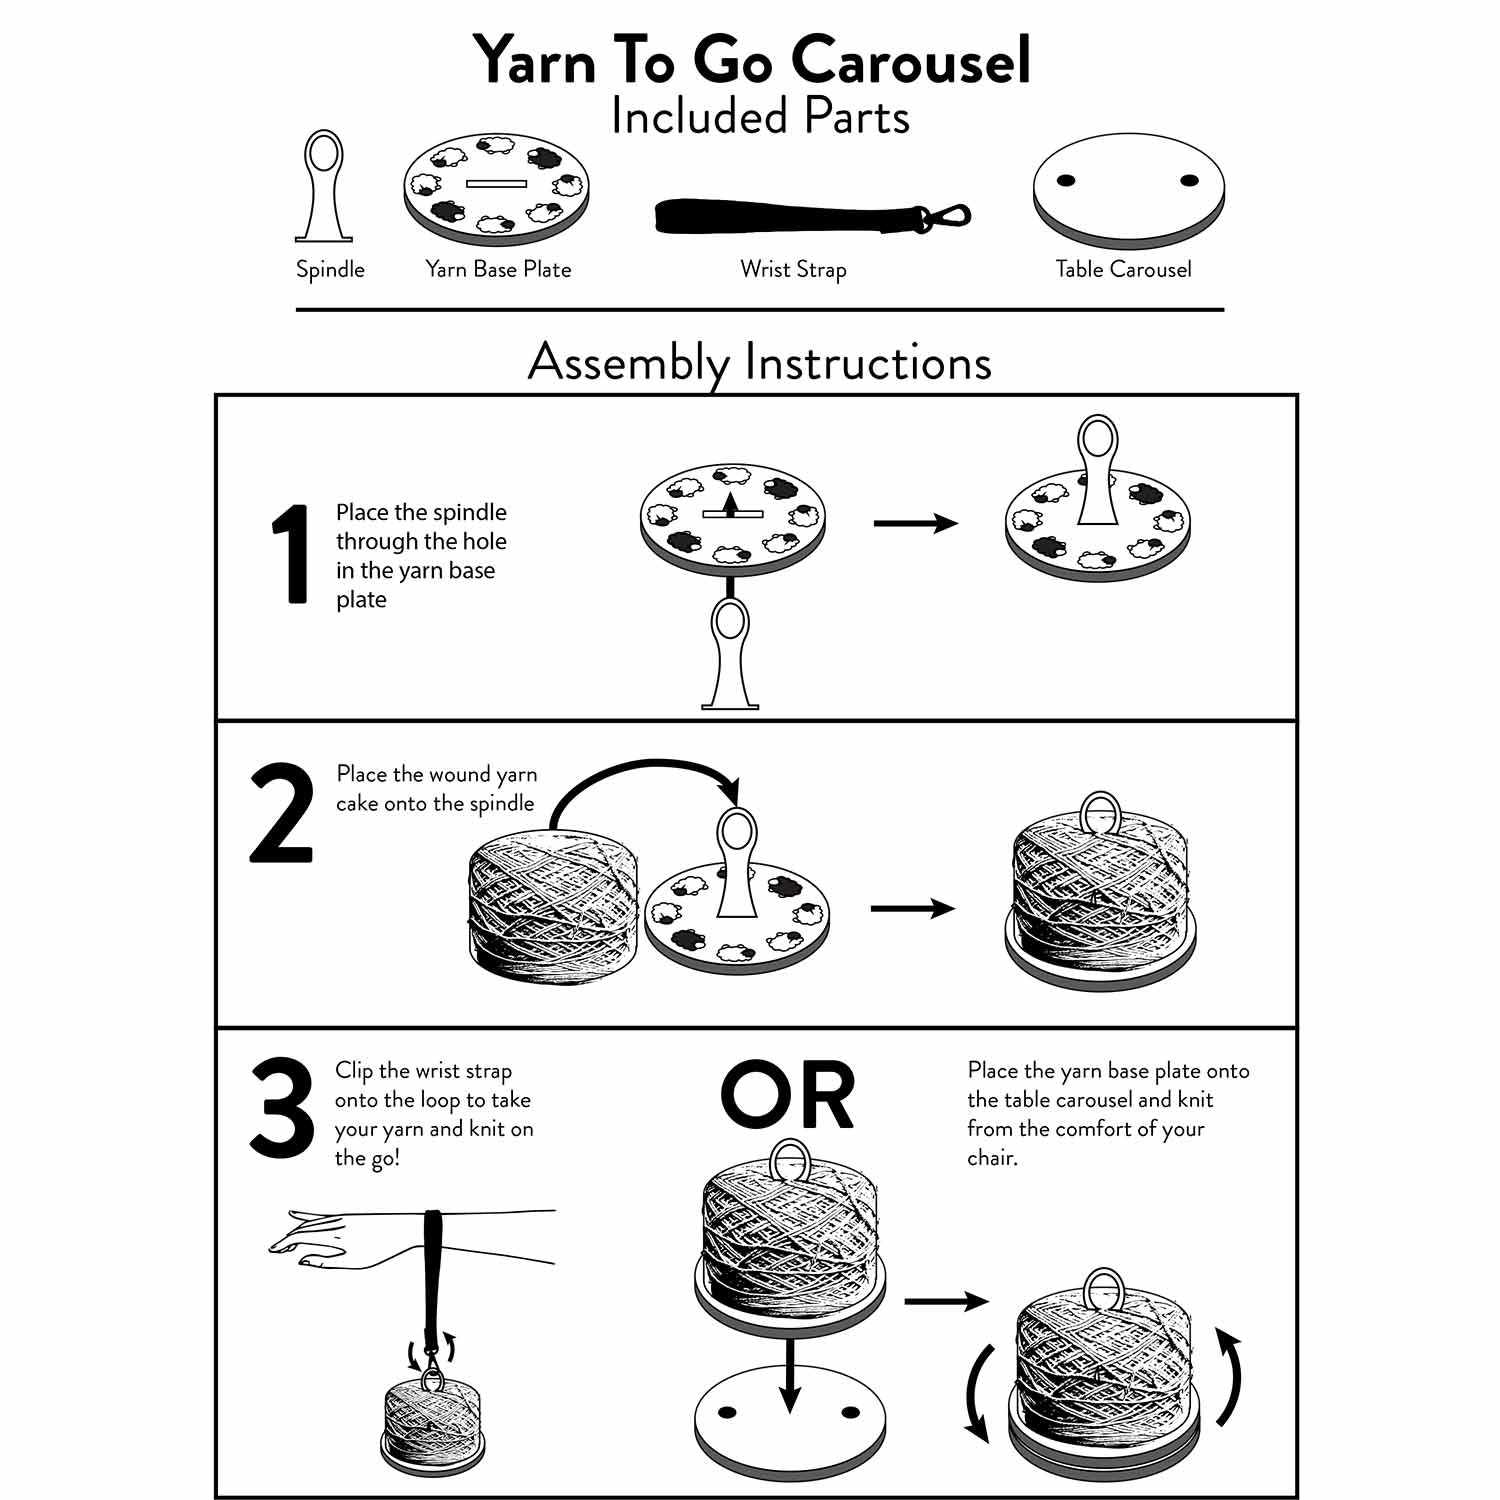 Yarn To Go Carousel - Portable Yarn Butler - Carousel & Wrist strap Bundle